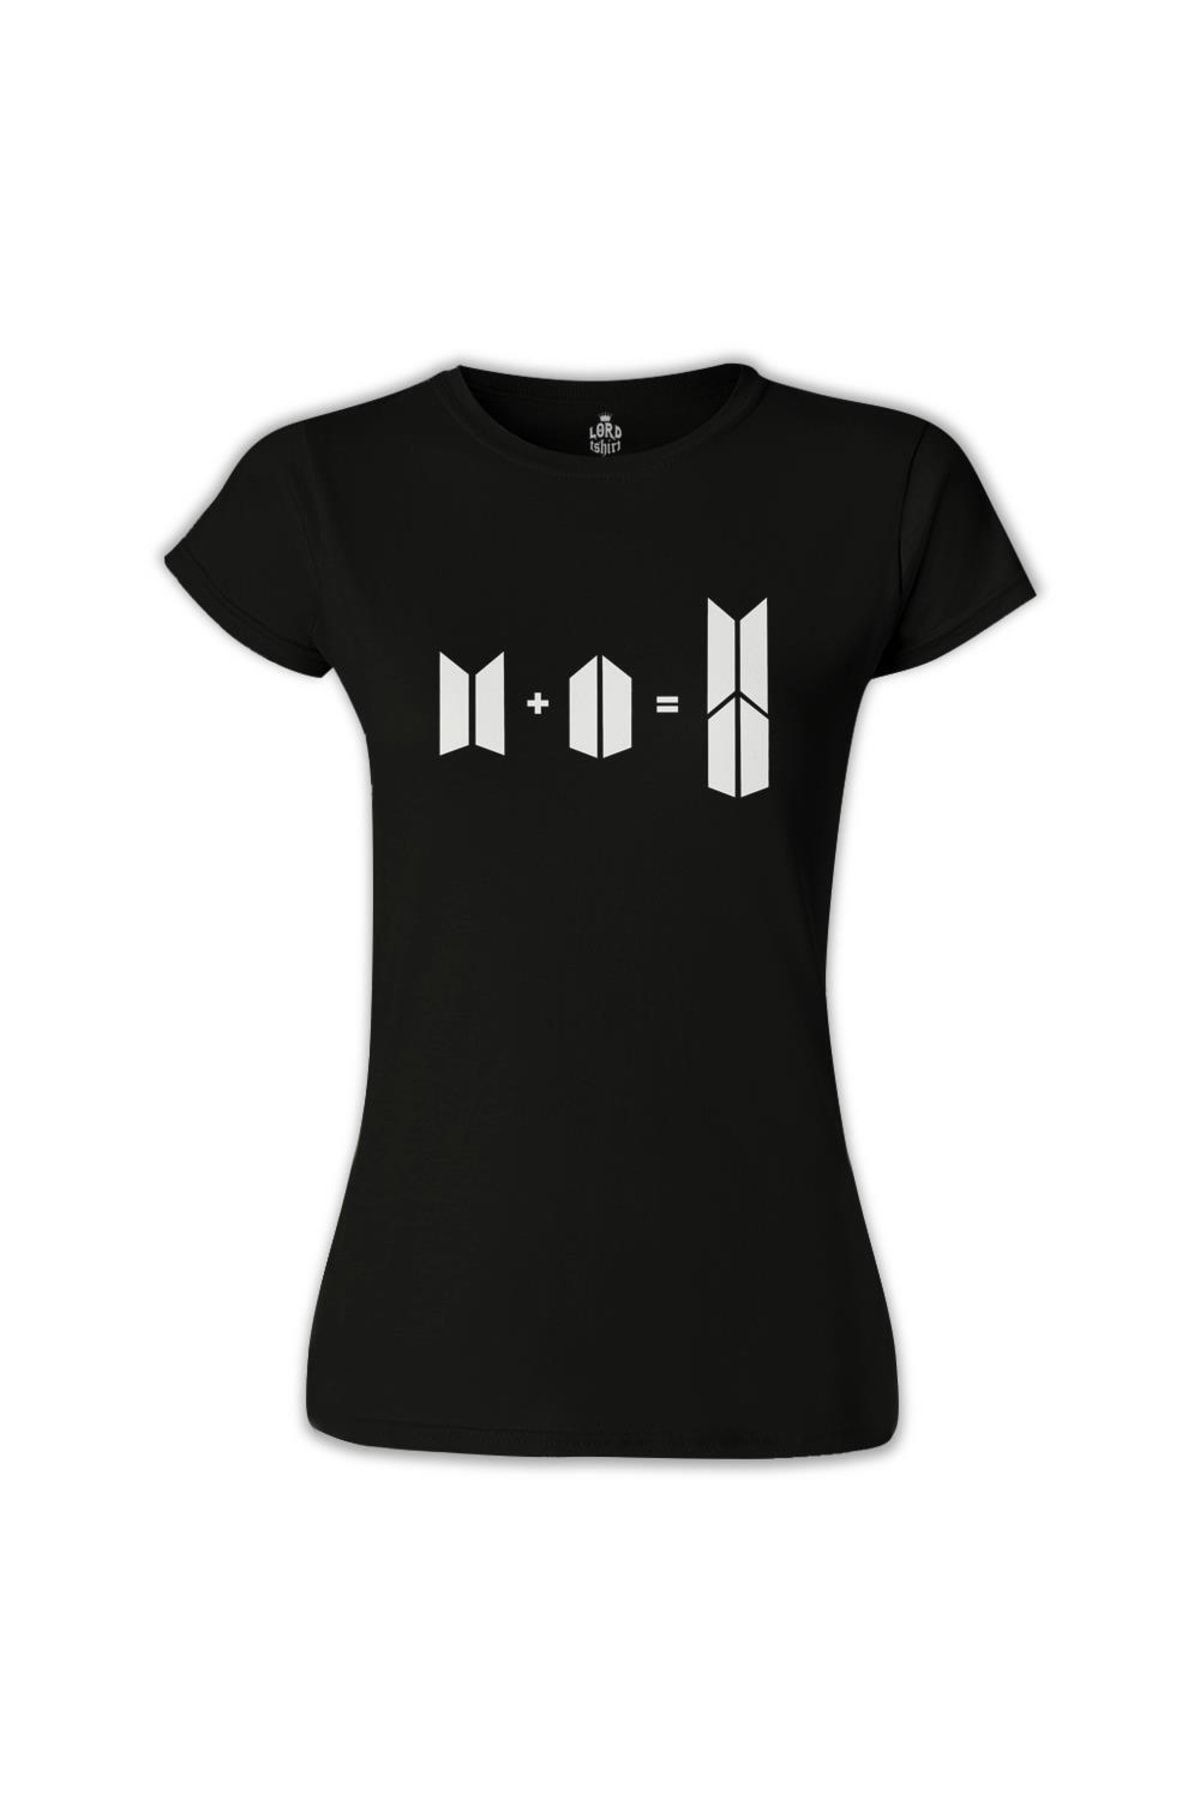 Lord T-Shirt Kadın Siyah BTS Bts Army T-shirt bs-1131